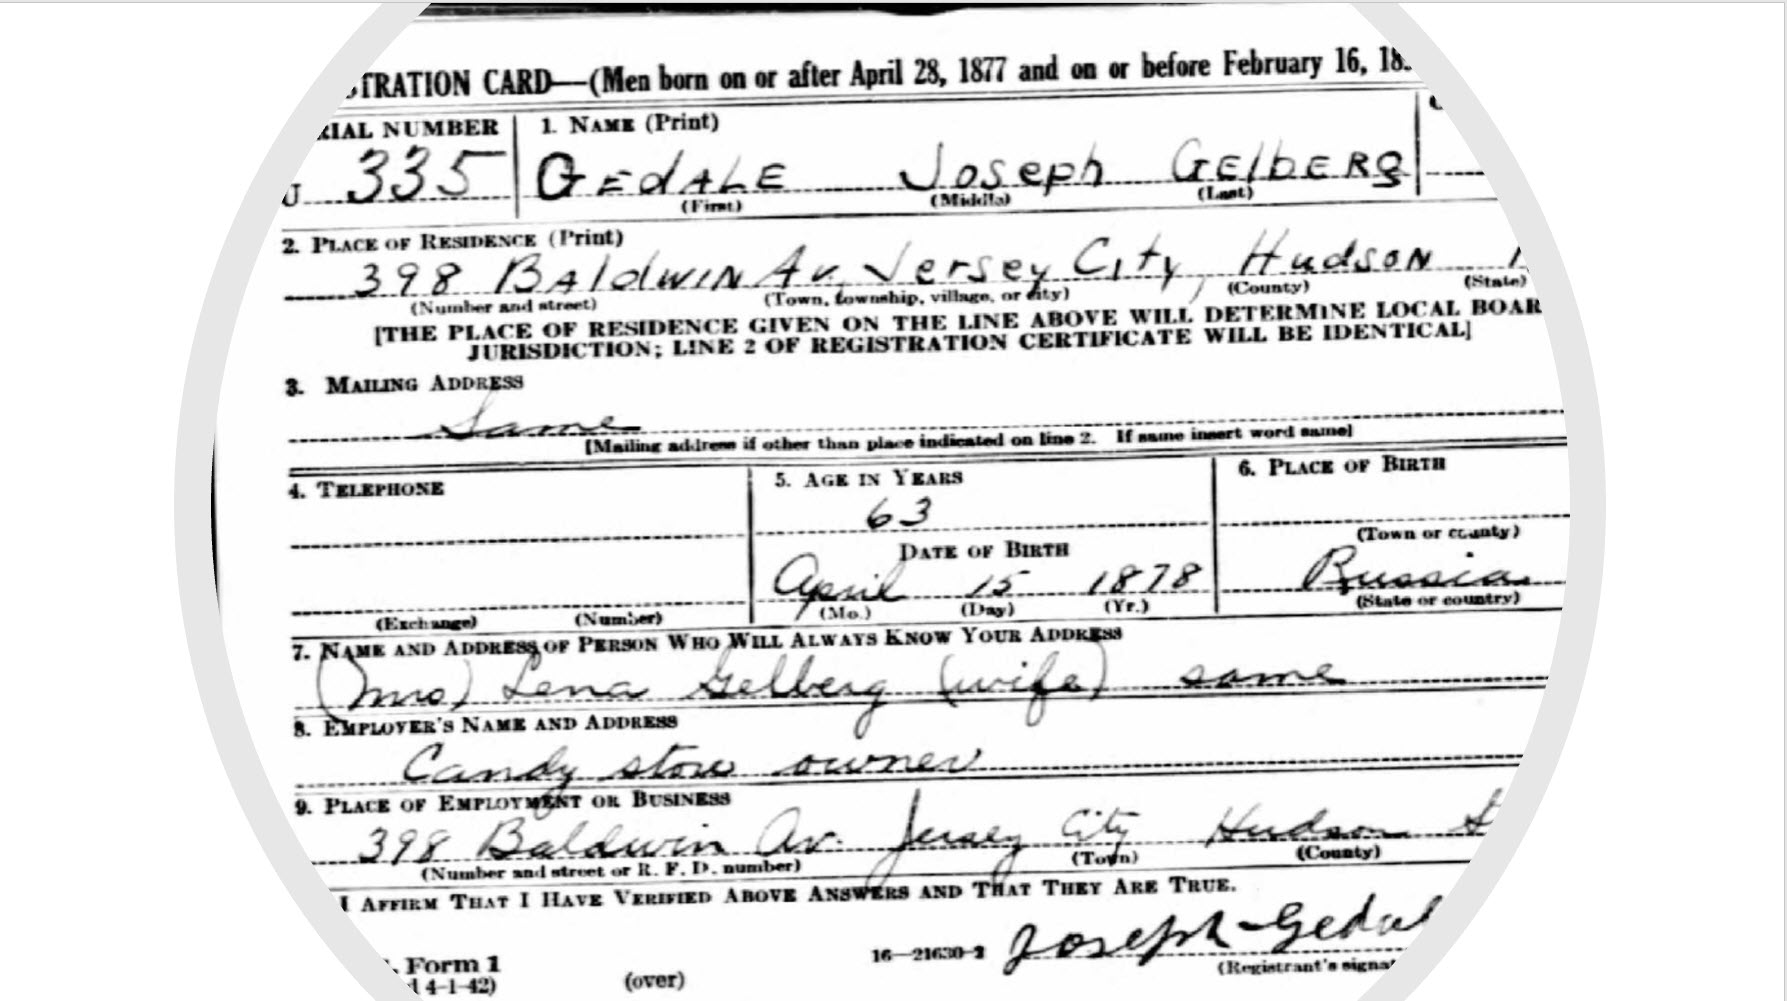 Joseph (Gedale) Gelberg 1942 Draft Registration